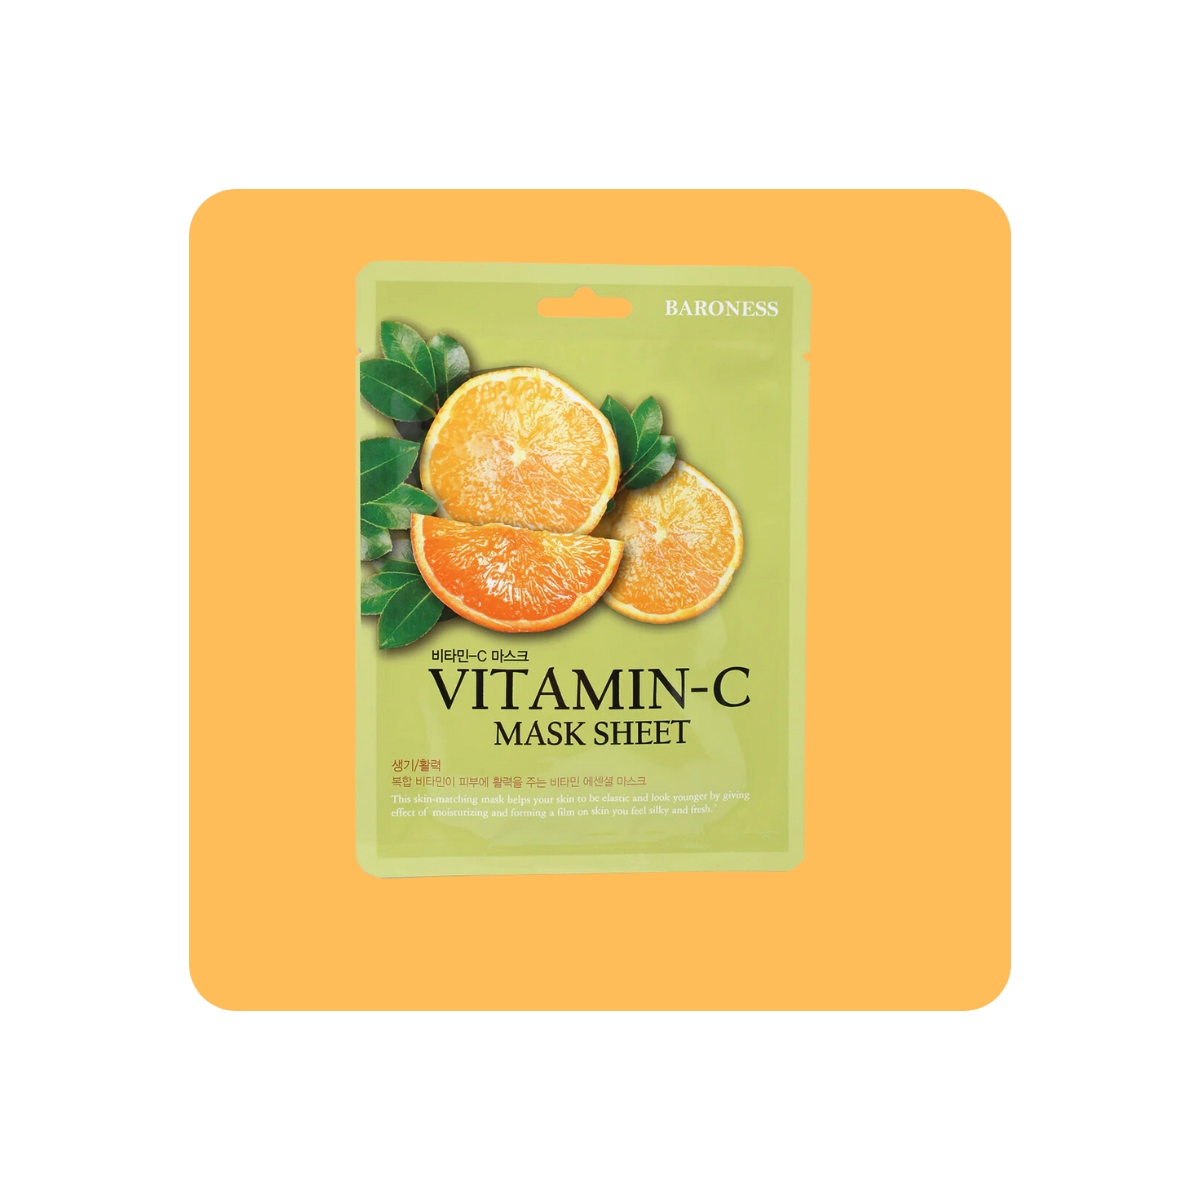 Mascarillas Coreanas de Hoja al mejor precio: Baroness Vitamin-C Brightening Mask Sheet de Baroness en Skin Thinks - Piel Seca